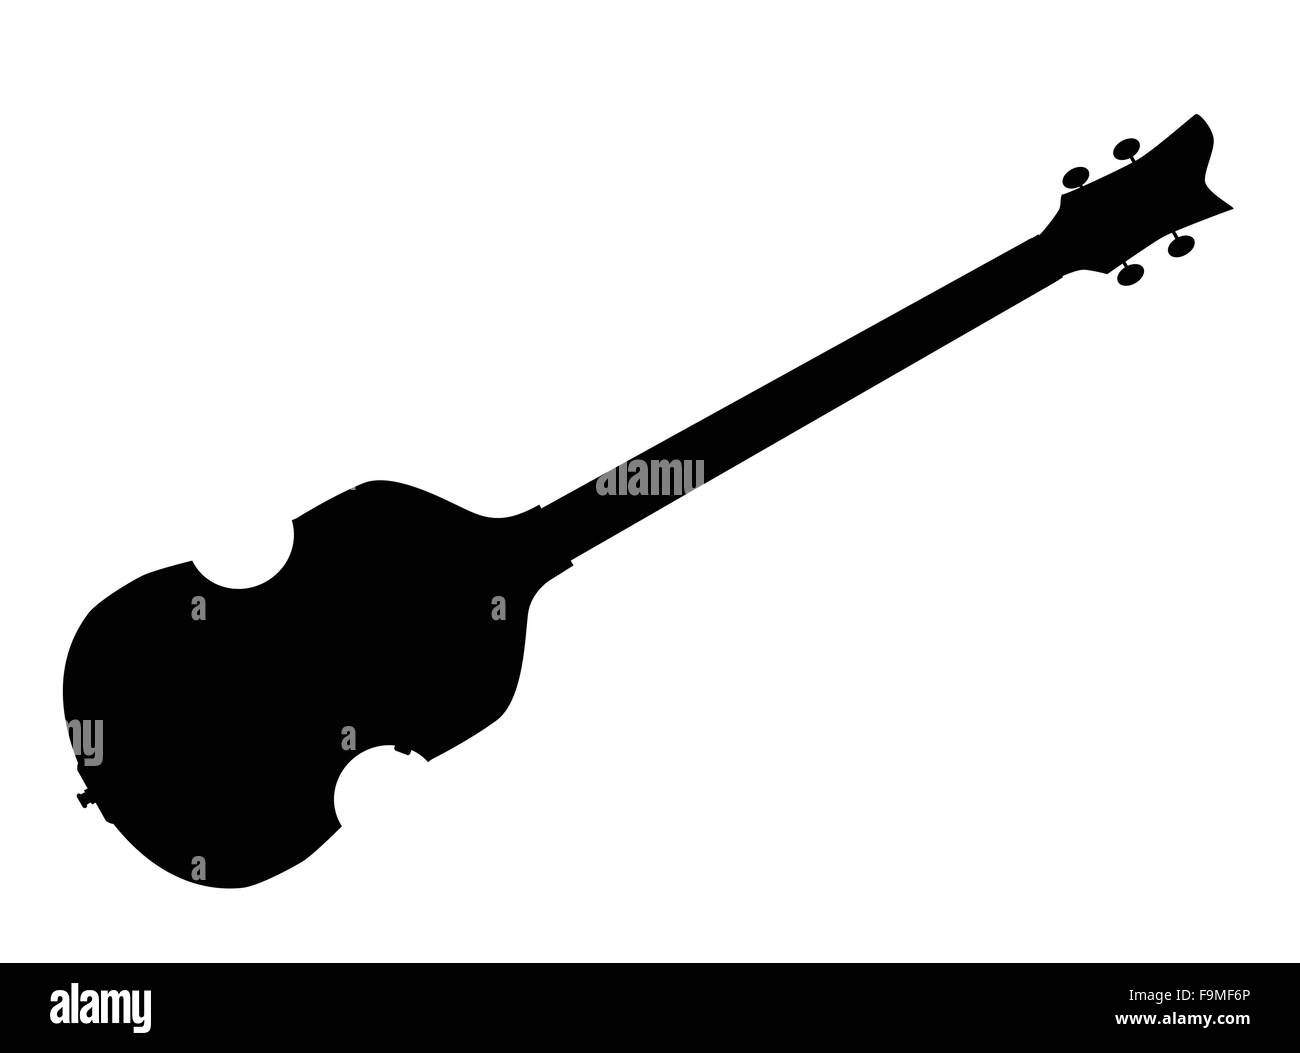 Eine typische Violine Stil elektrische Bassgitarre silhouette Stock Vektor